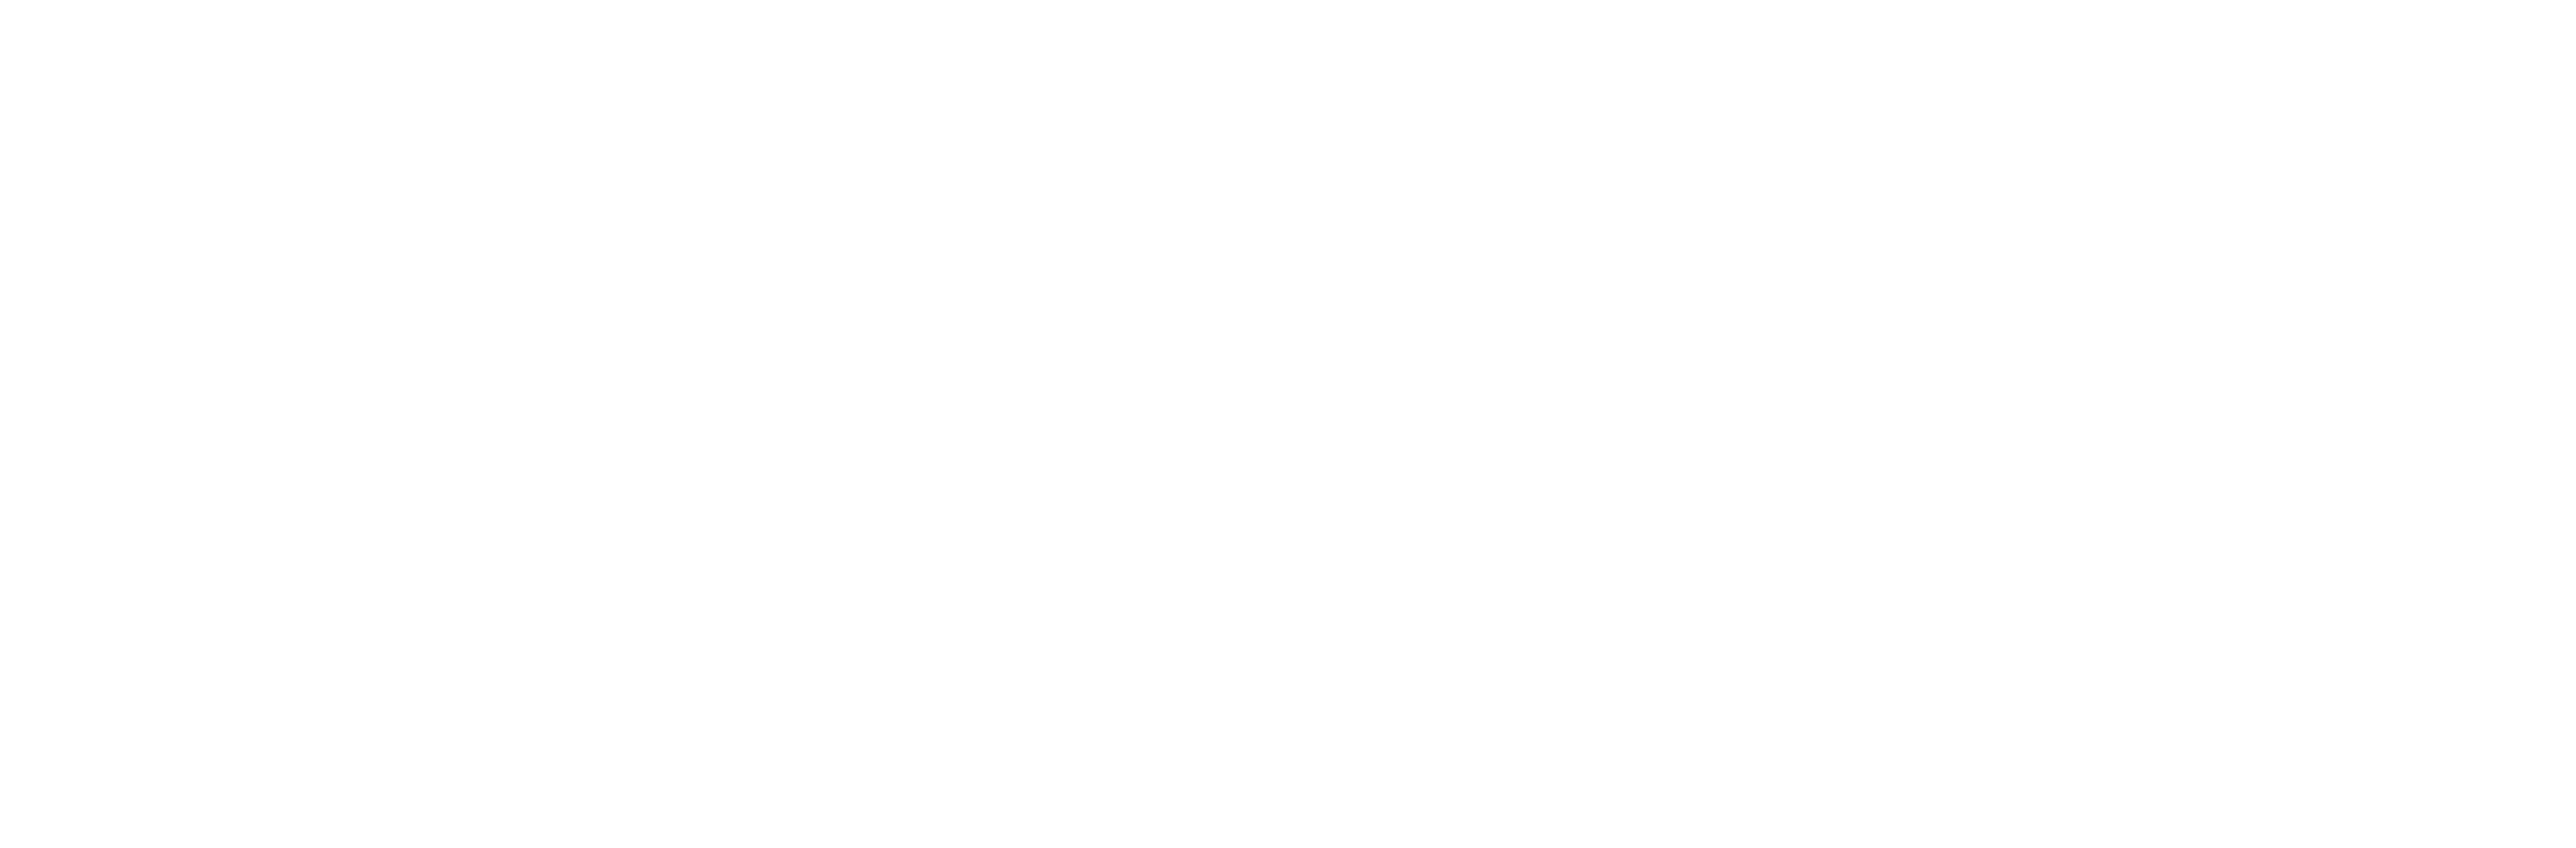 dmcc-logo-white